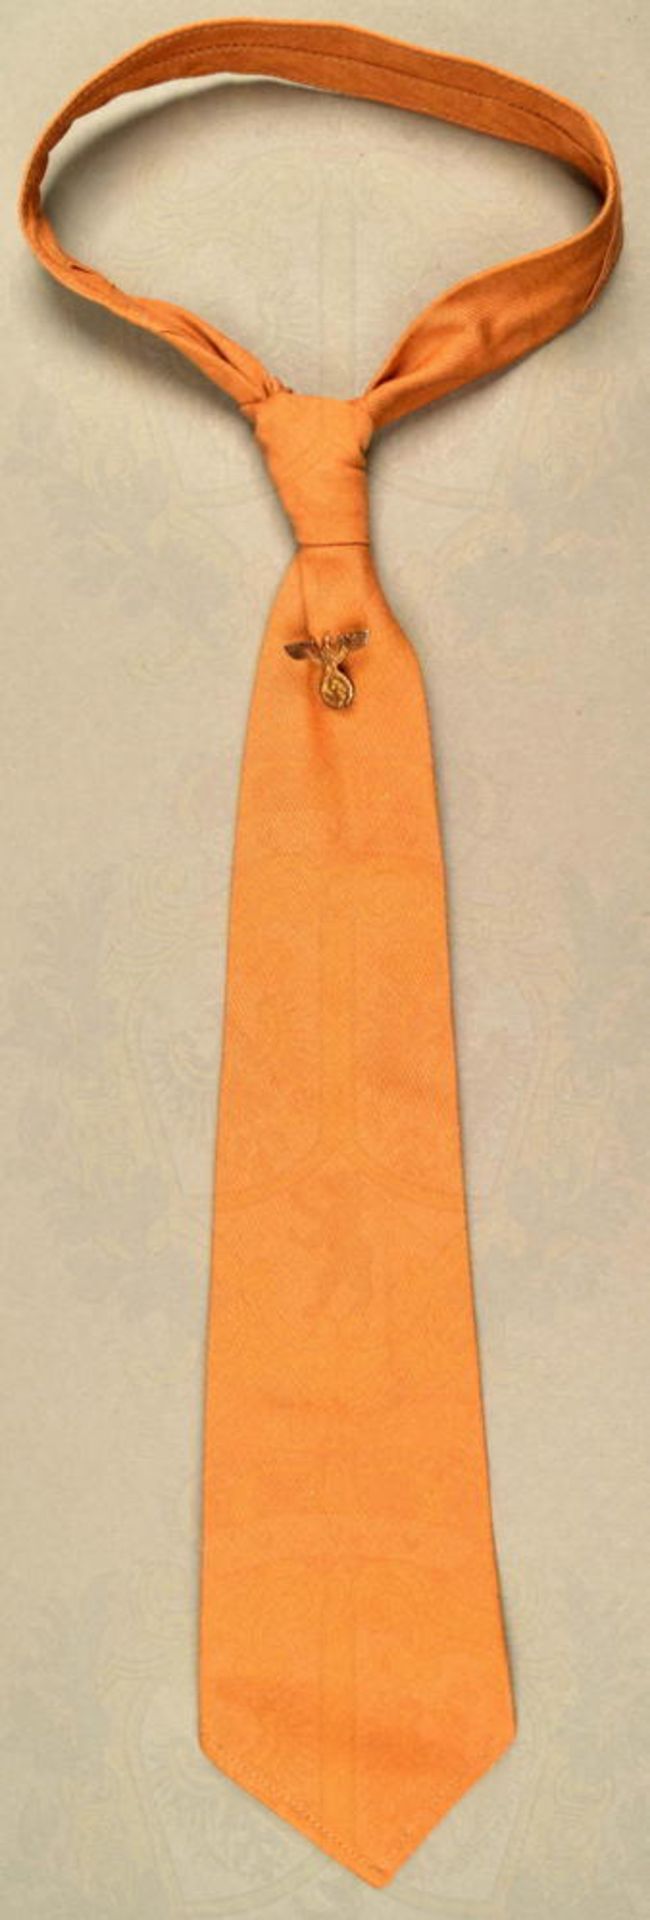 SA-Halsbinde (Krawatte)